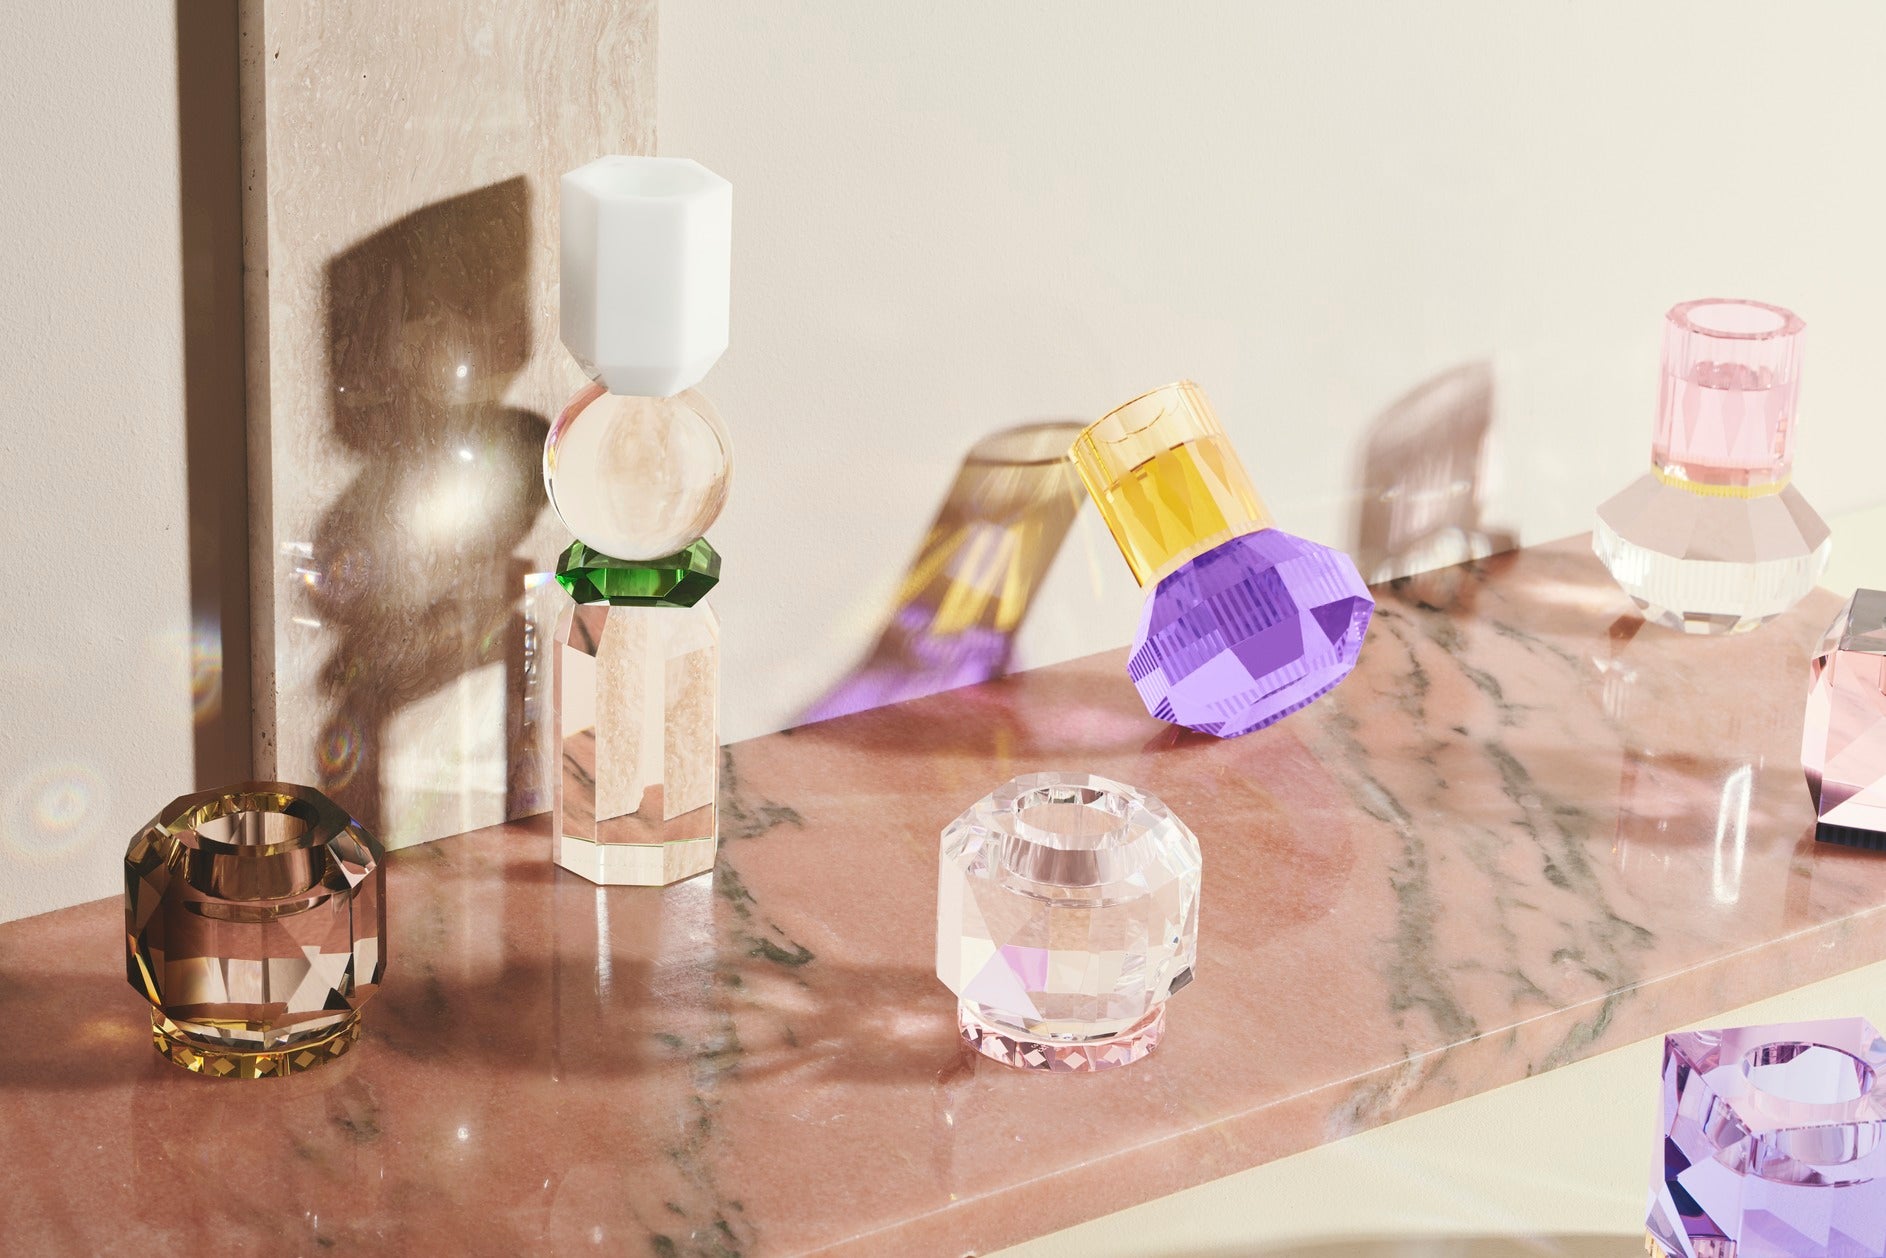 Opstilling af forskellige fyrfadslysestager i farvet krystalglas, placeret på laksefarvet marmorplade.